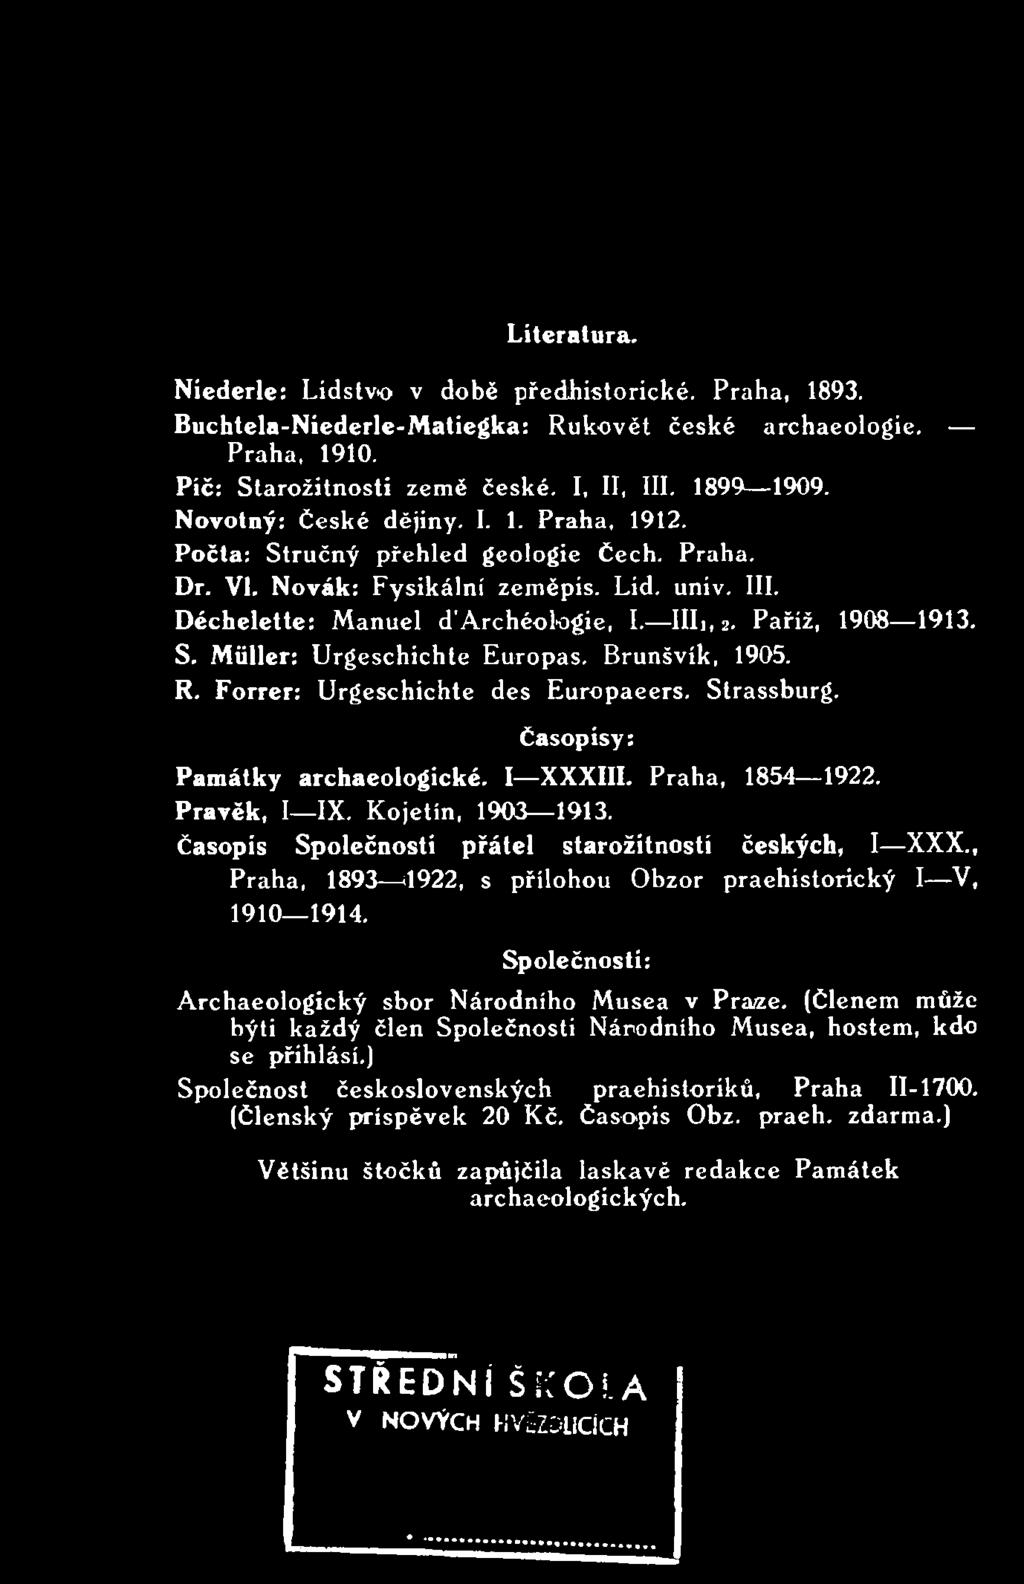 , Praha, 1893 4922, s přílohou Obzor praehistorický I V, 1910 1914. Časopisy: Společností: Archaeologický sbor Národního Musea v Praze.